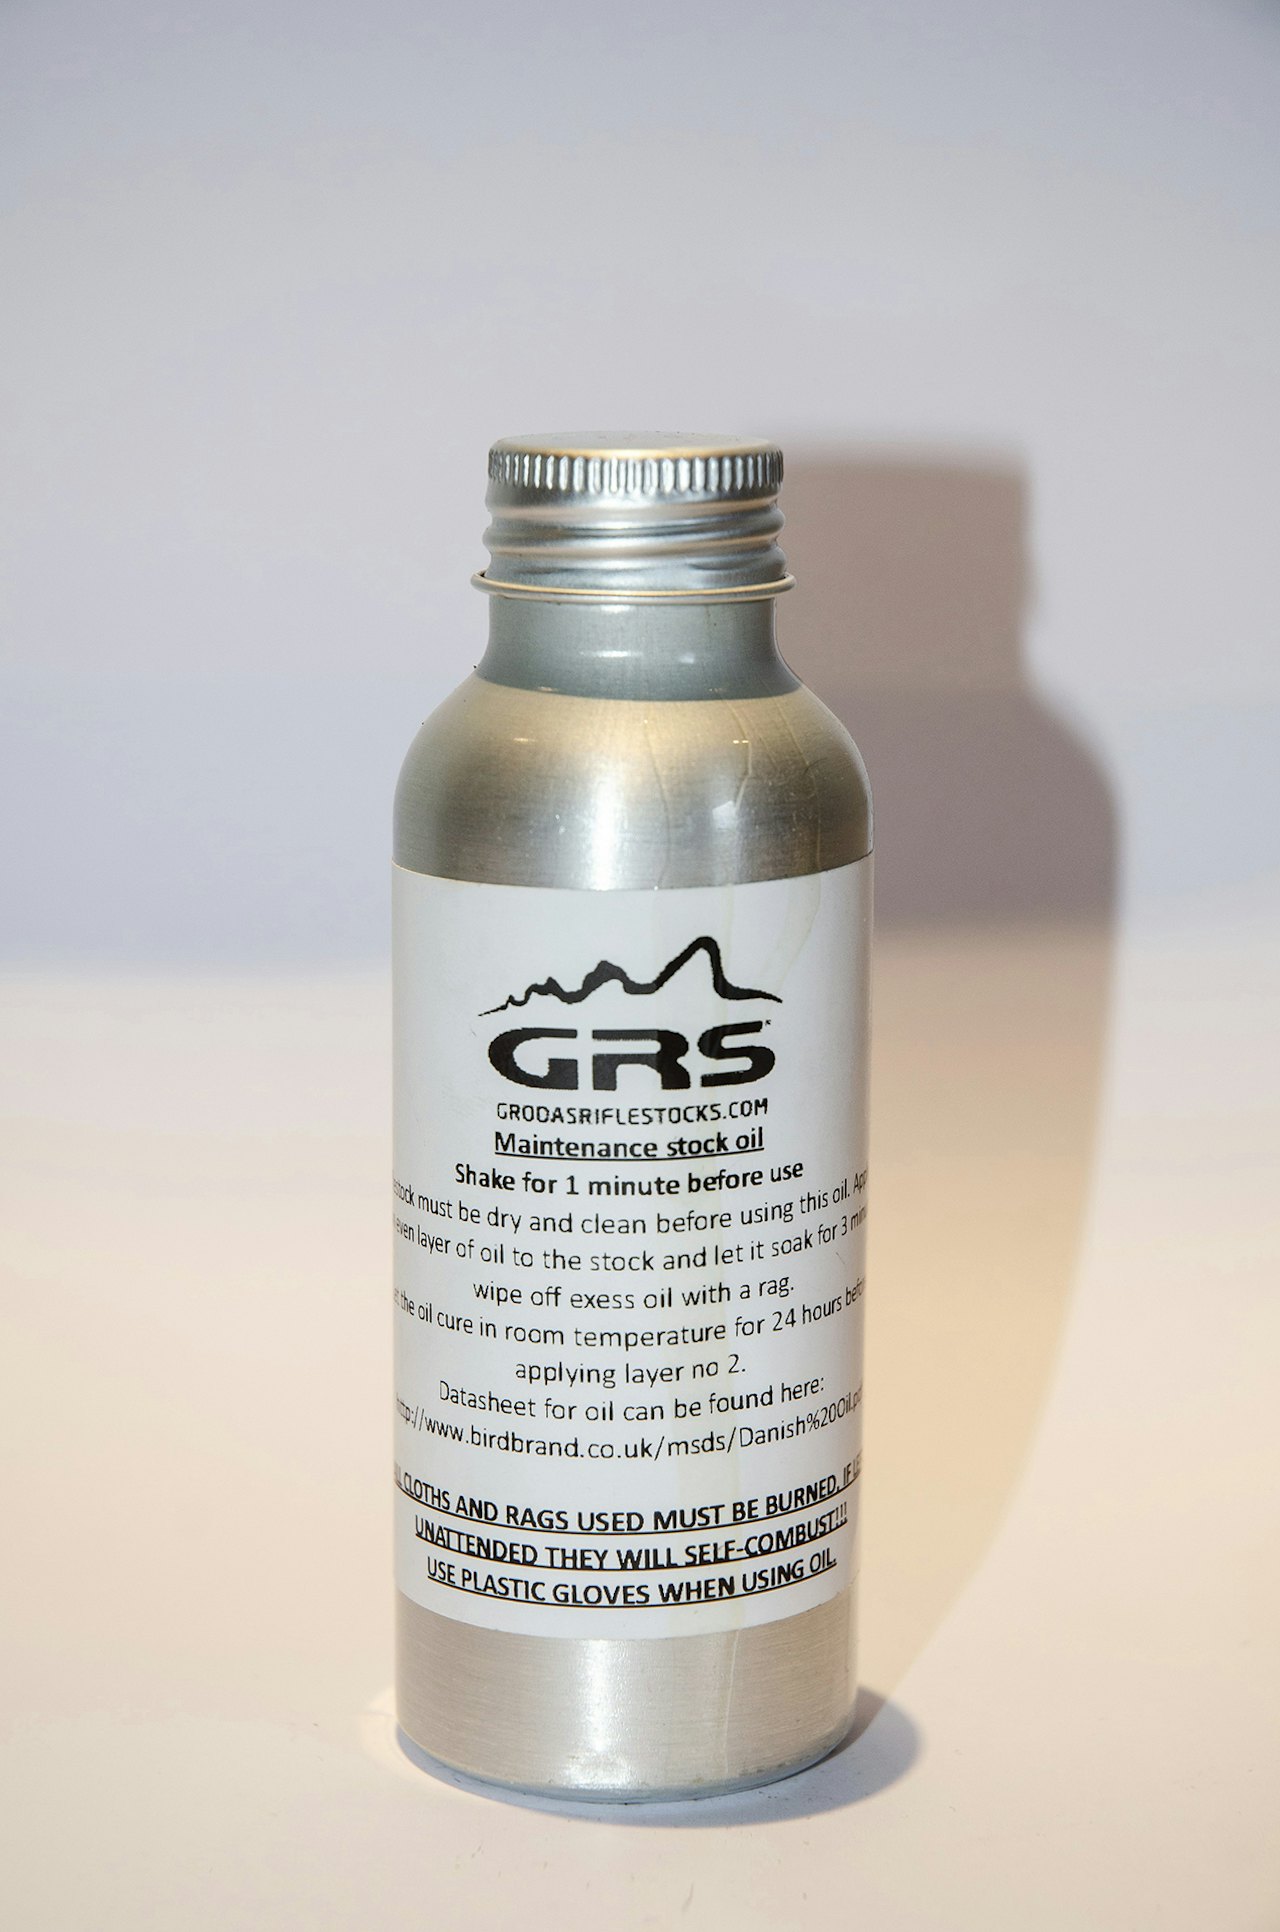 GRS skjefteolje i metallflaske til test